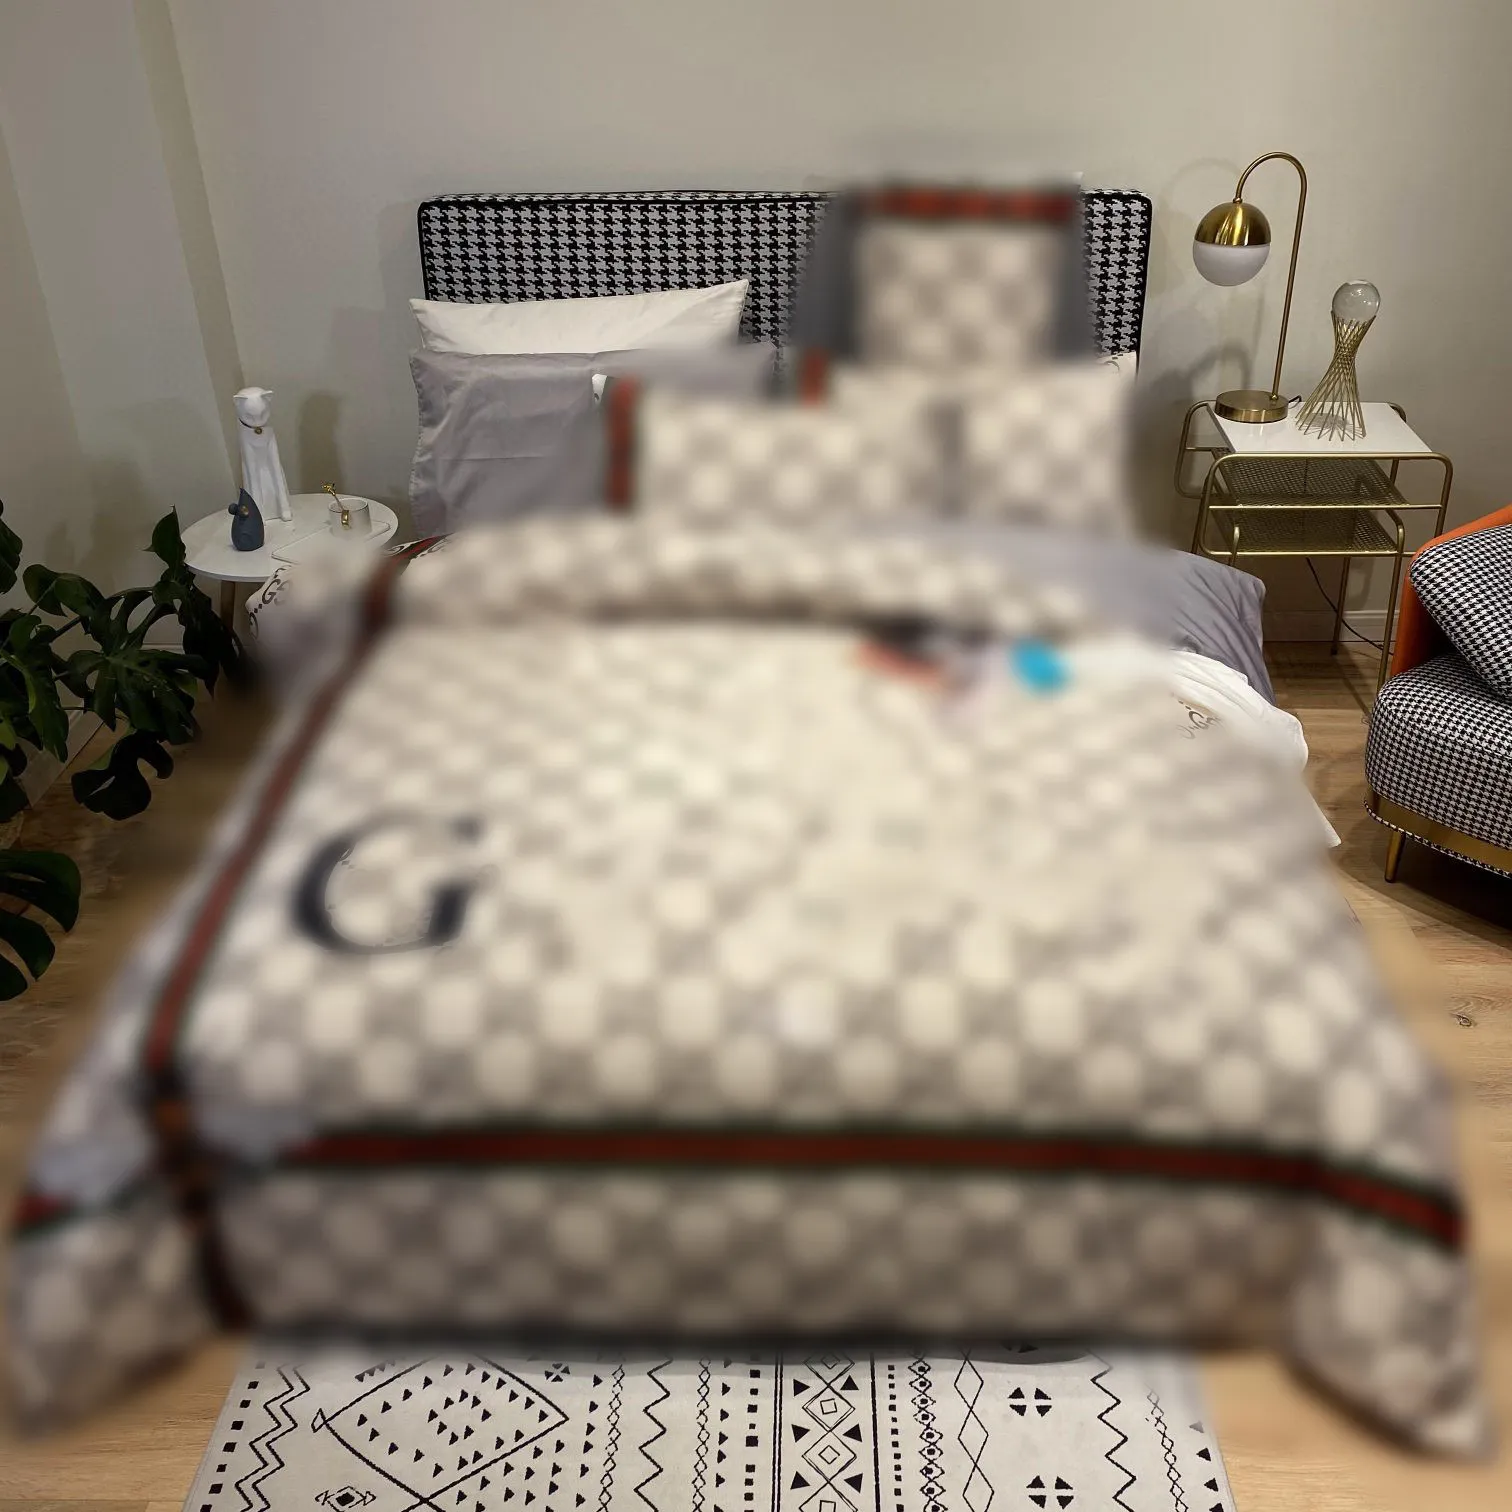 Conjuntos de ropa de cama de diseño de color caqui de lujo con letras de abeja impresas tamaño queen tamaño king funda nórdica sábanas fundas de almohada de moda juego de edredón